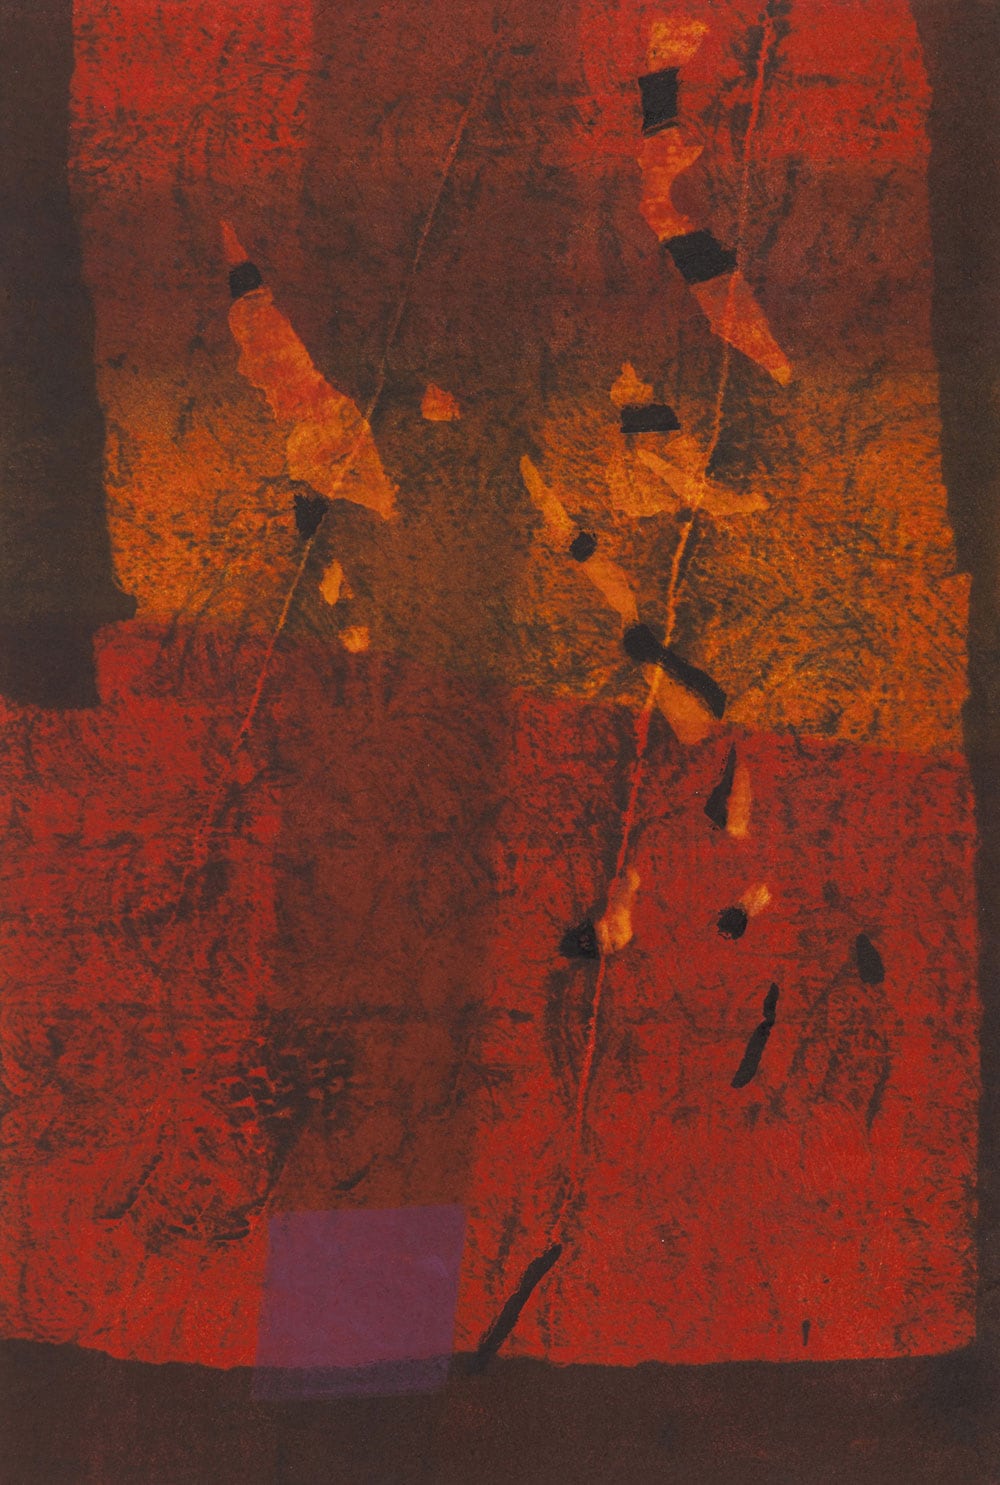 【萩原英雄《石の花(赤)》1960年】独自の技法と深い色彩を特徴とする山梨県出身の美術家による木版画。萩原は2000年に自身の作品と収集品を寄贈。